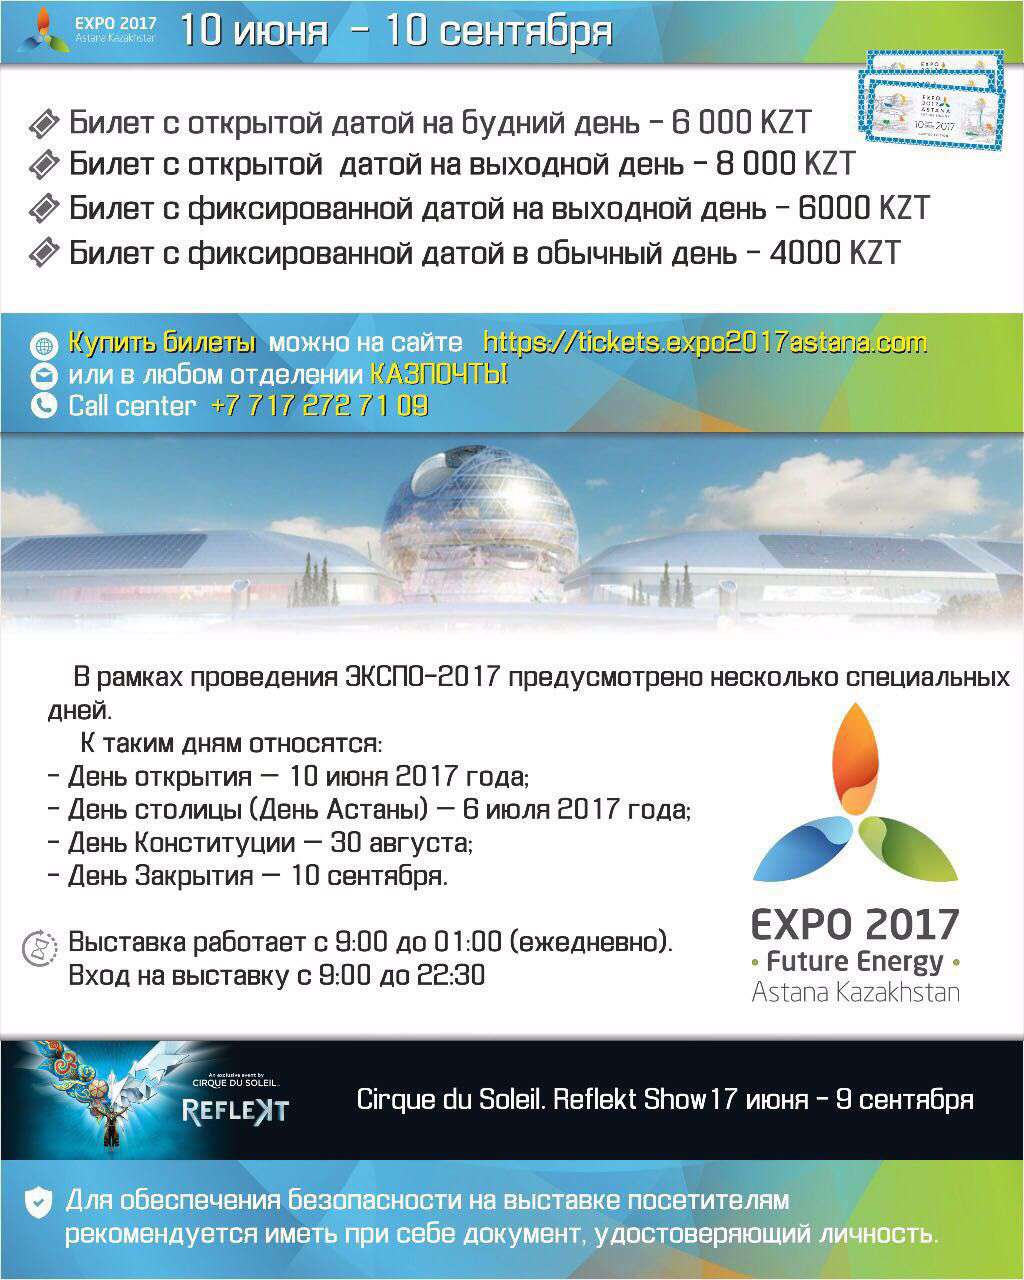 EXPO-2017. Цены на билеты и расписание